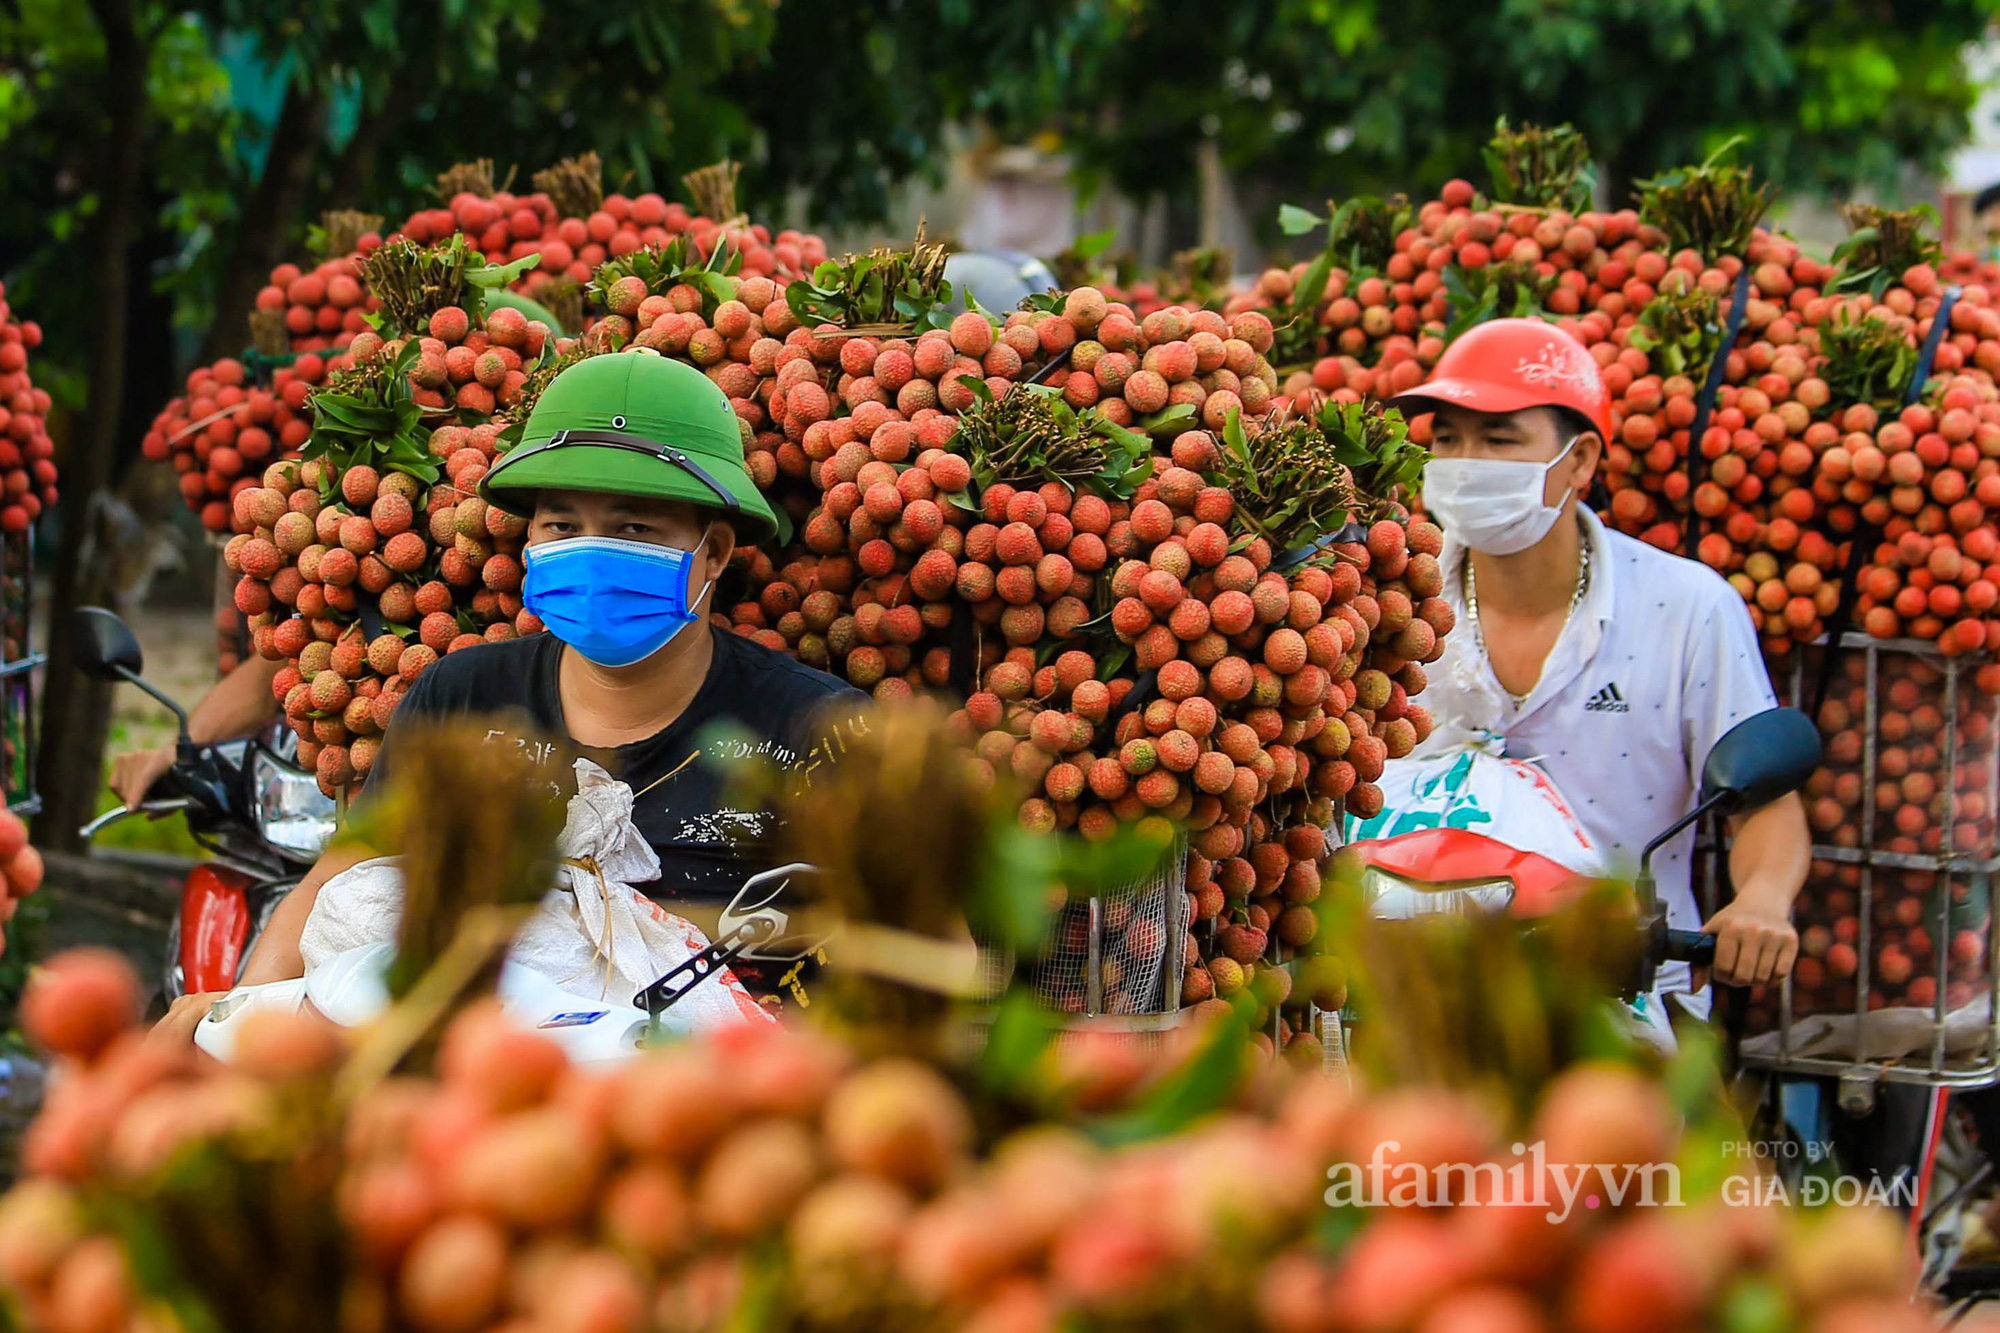 Chợ vải Bắc Giang nhộn nhịp vào mùa - Ảnh 4.